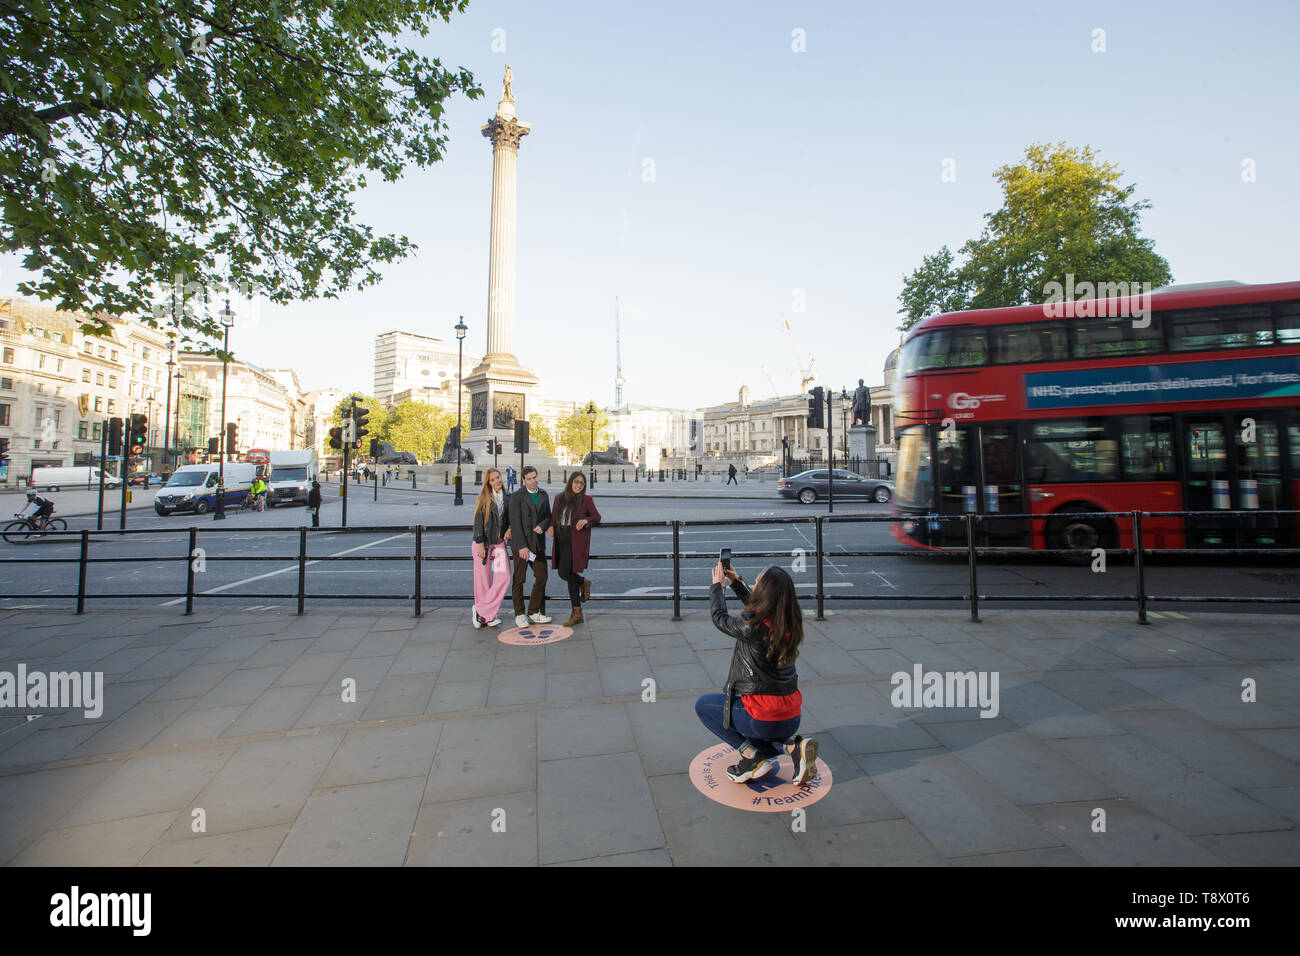 Les touristes ont leur photo prise à Trafalgar Square à Londres, que Google a dessiné exactement où vous enclenchez les toiles photographiques pour célébrer le lancement de pixel 3a. Banque D'Images